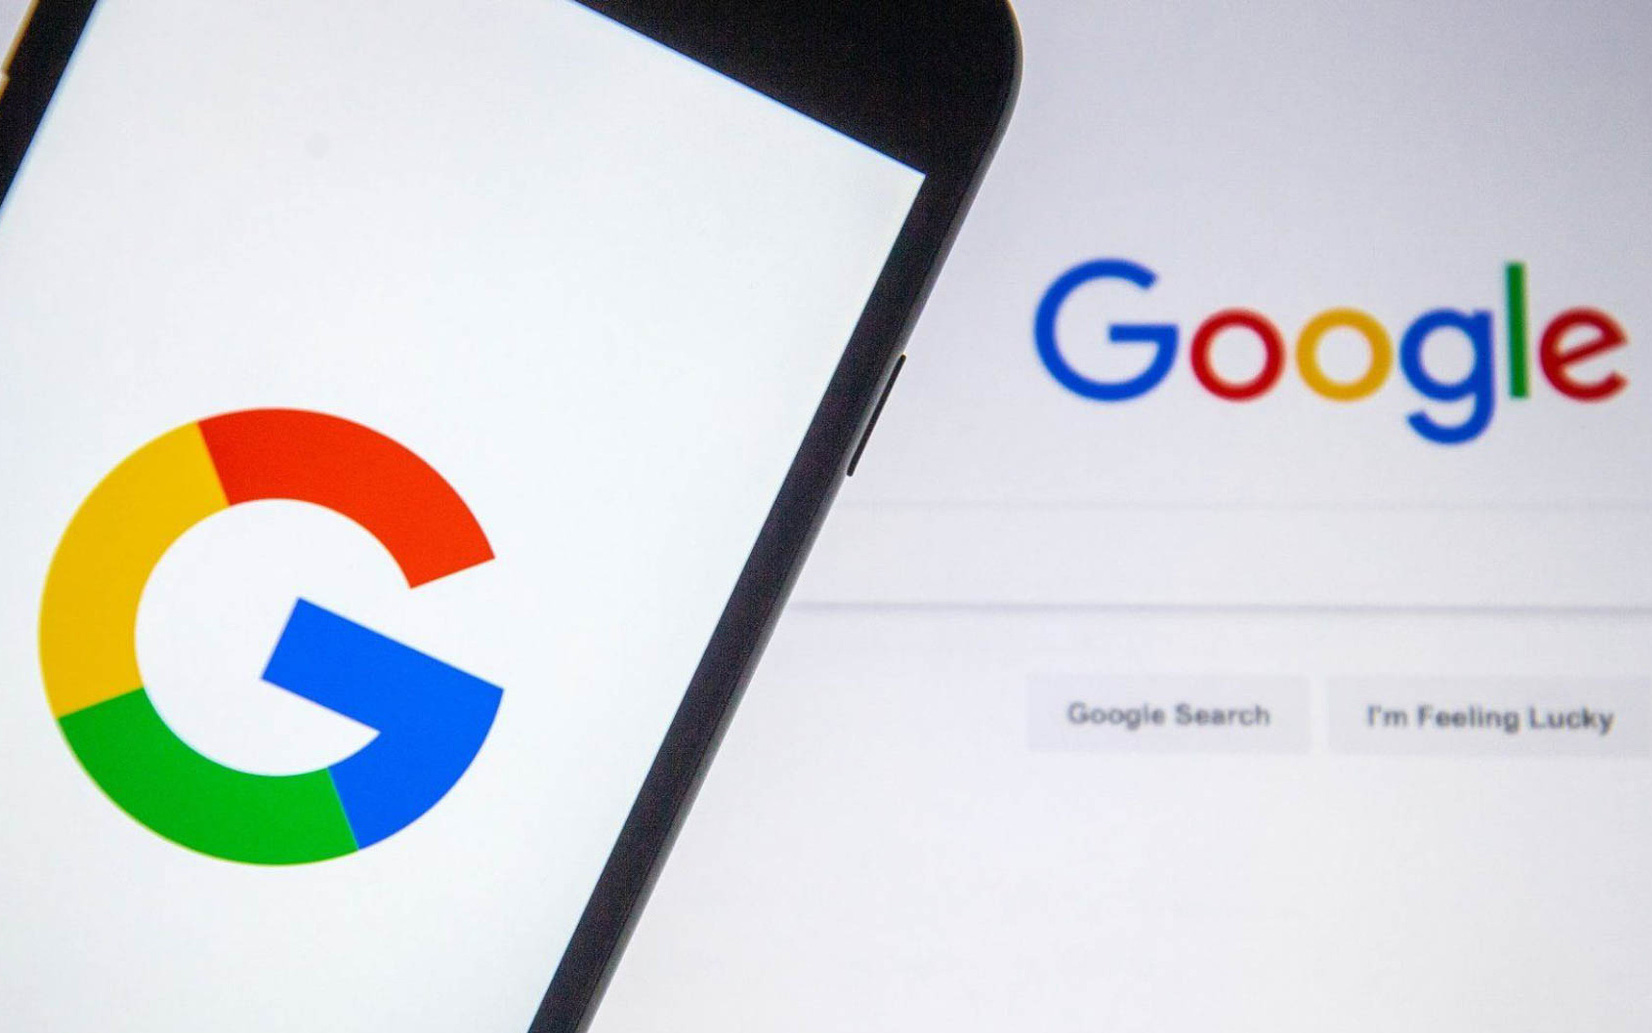 "Sao kê là gì?" lọt top tìm kiếm nhiều nhất của người Việt trên Google năm 2021